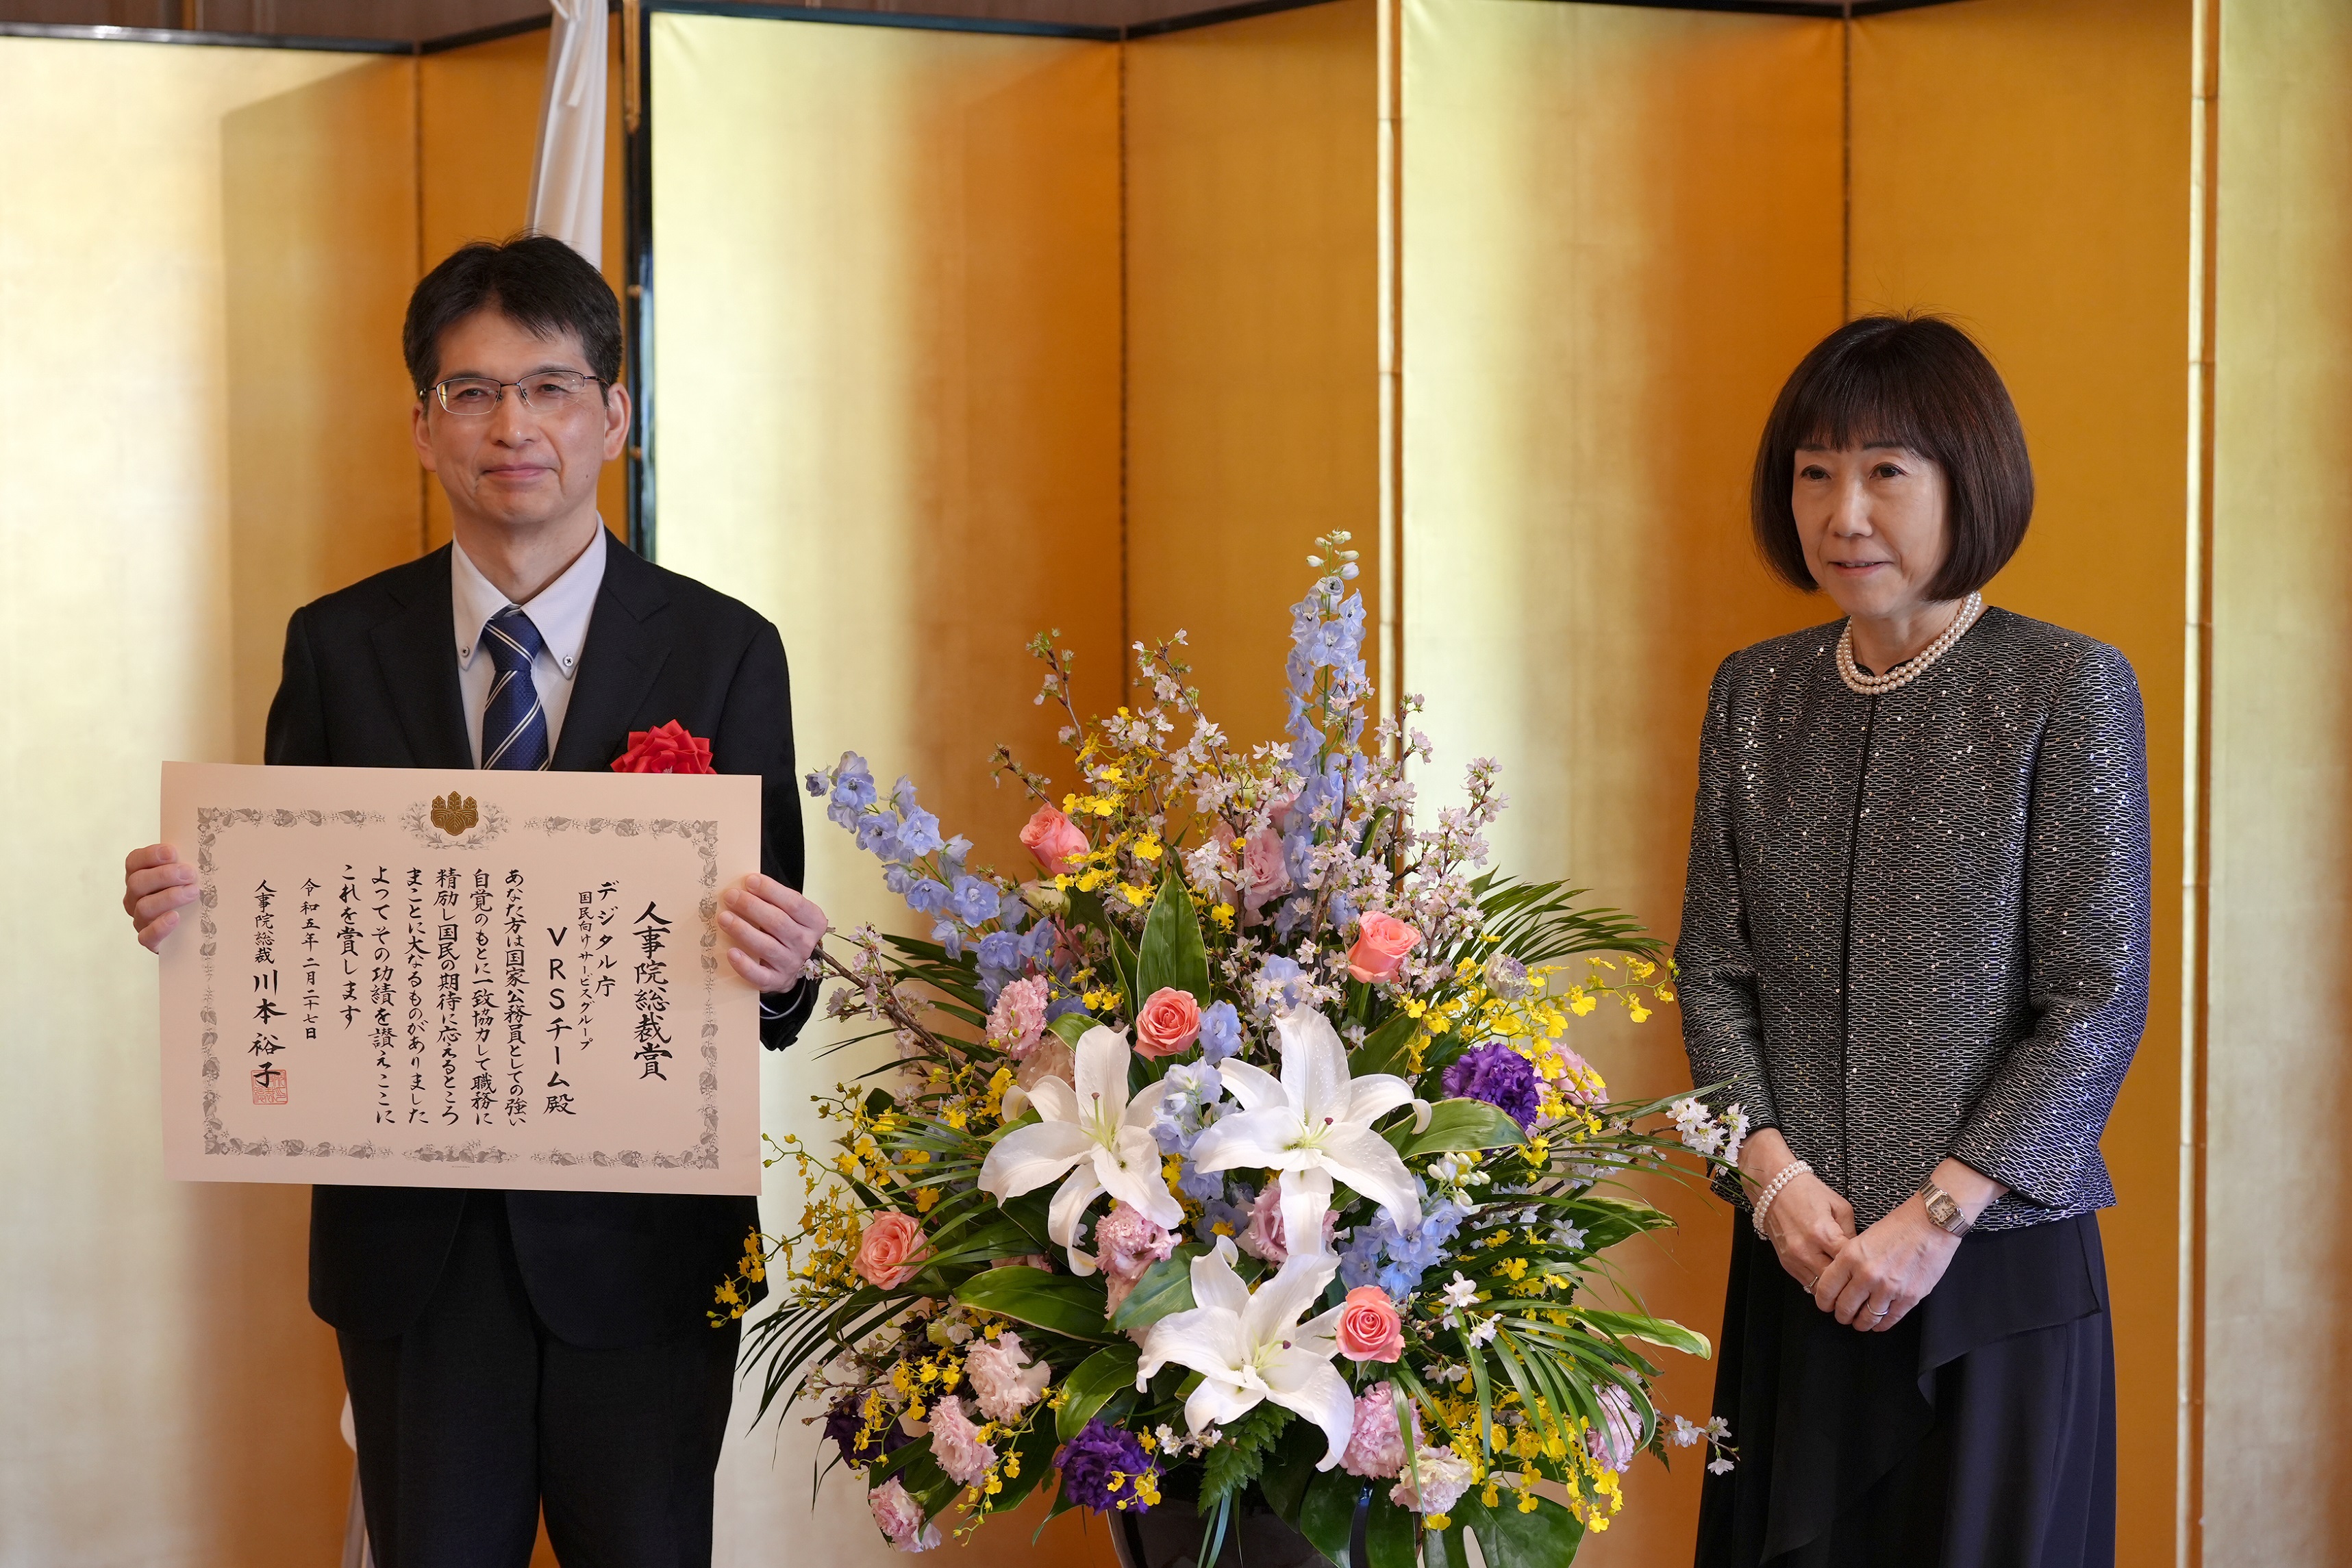 左から順番にデジタル統括官と川本裕子総裁(人事院)が立って並んでいる。統括官は表彰状を胸の前に広げ、両手で持っている。